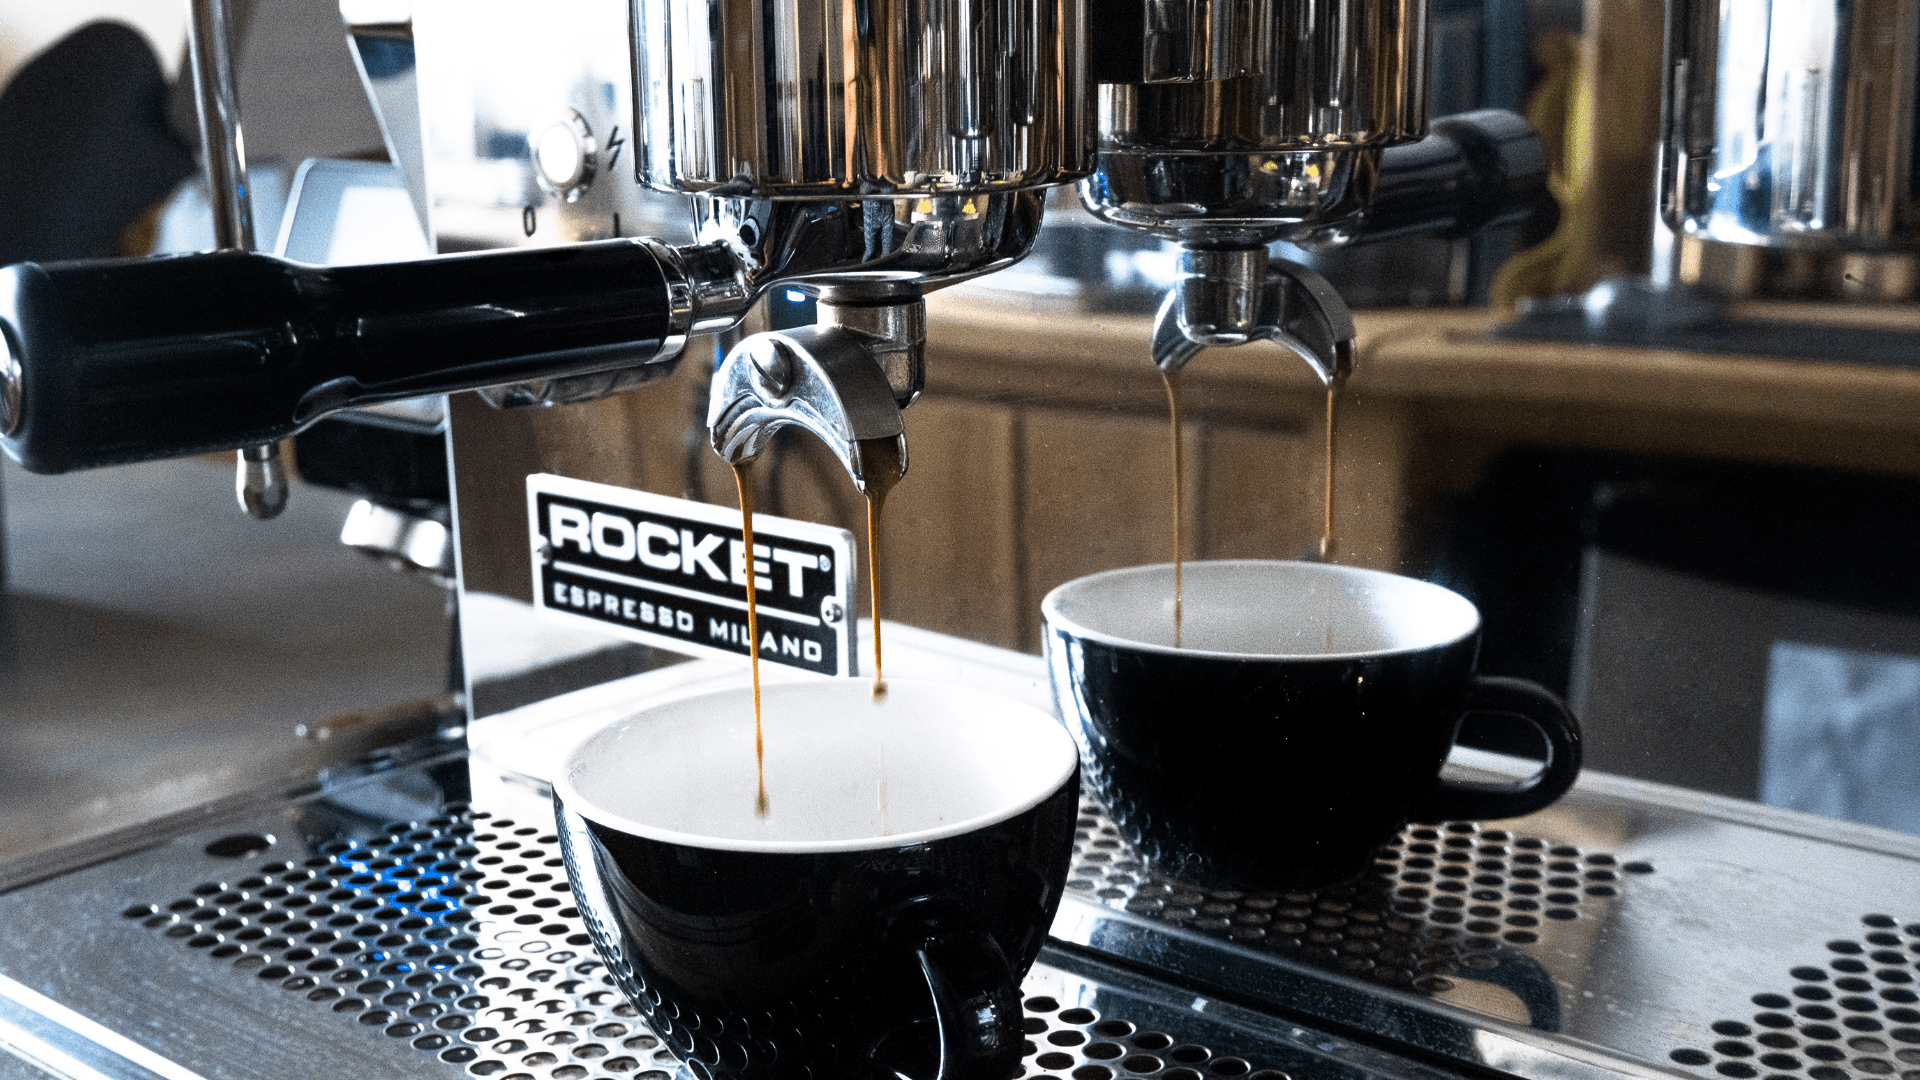 Comment nettoyer une machine espresso? - Café Barista